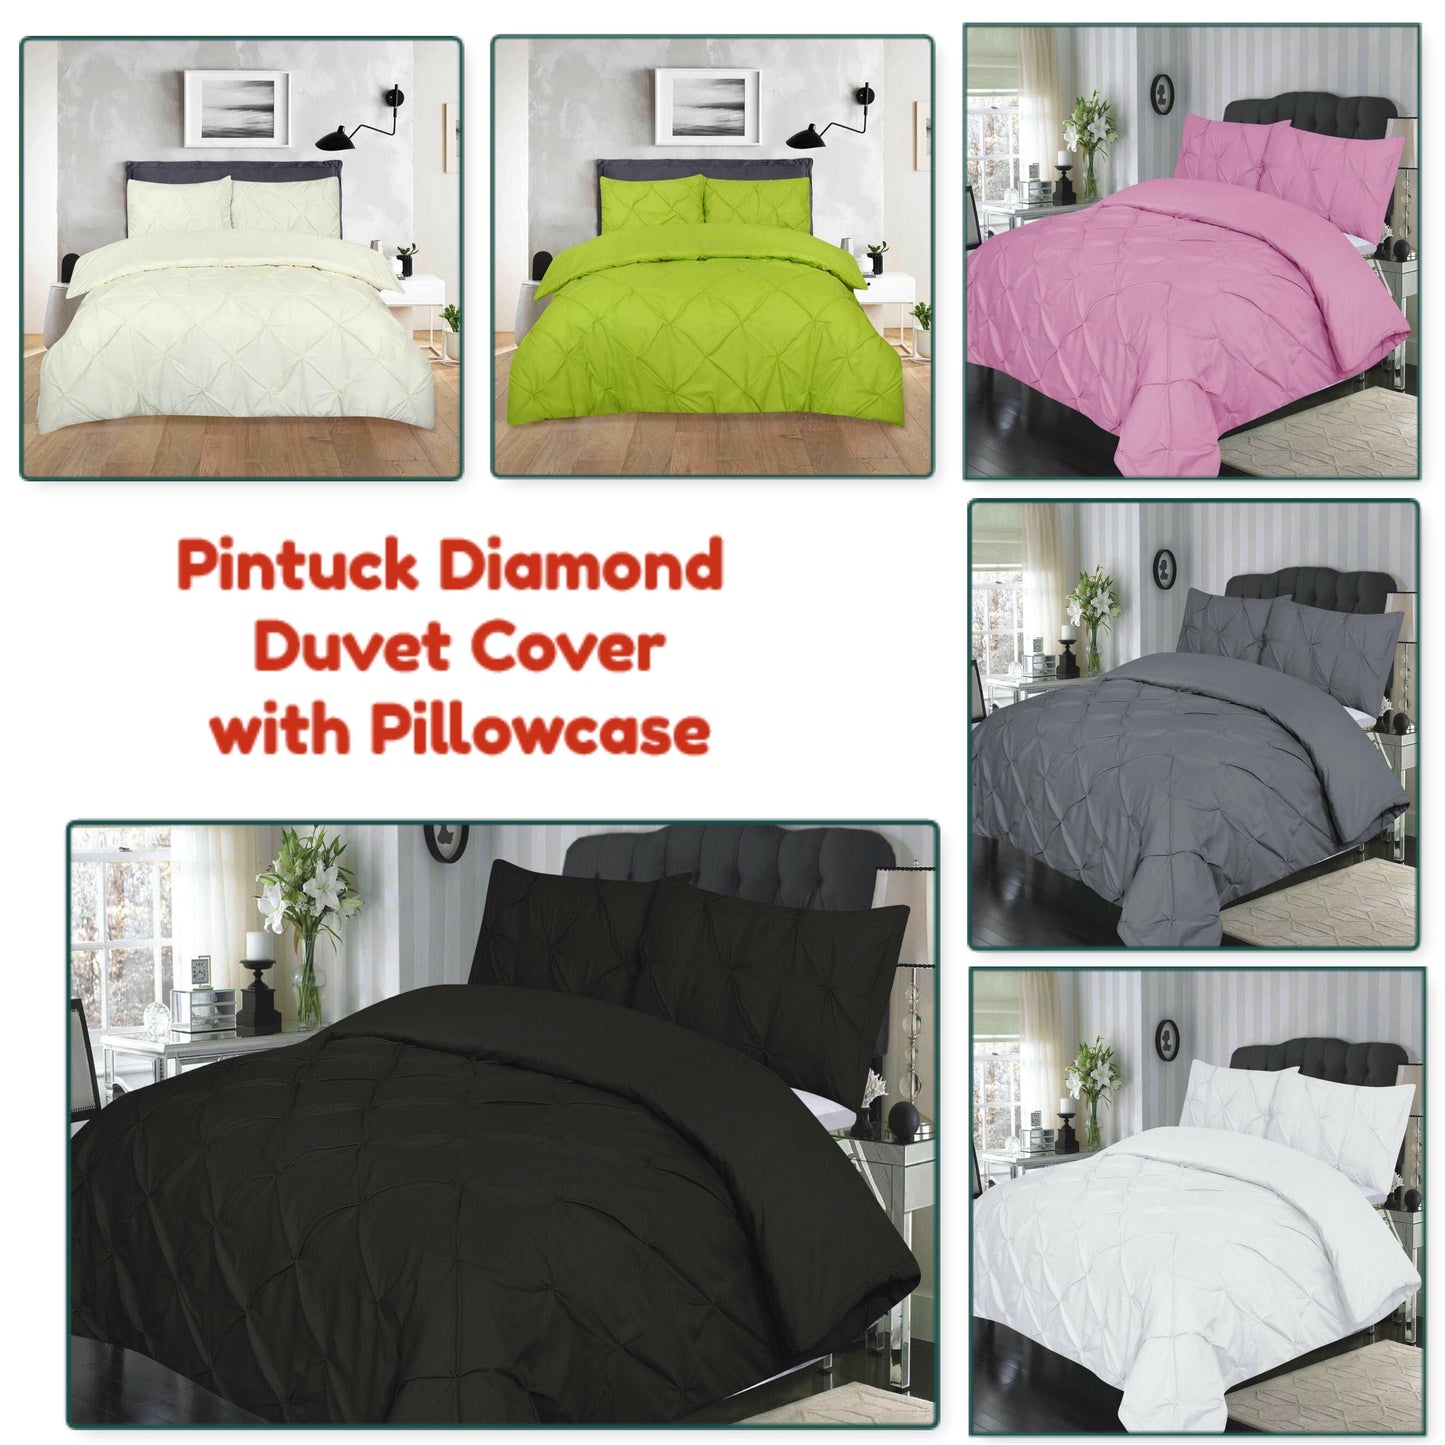  Pintuck Diamond Quilt Duvet Cover